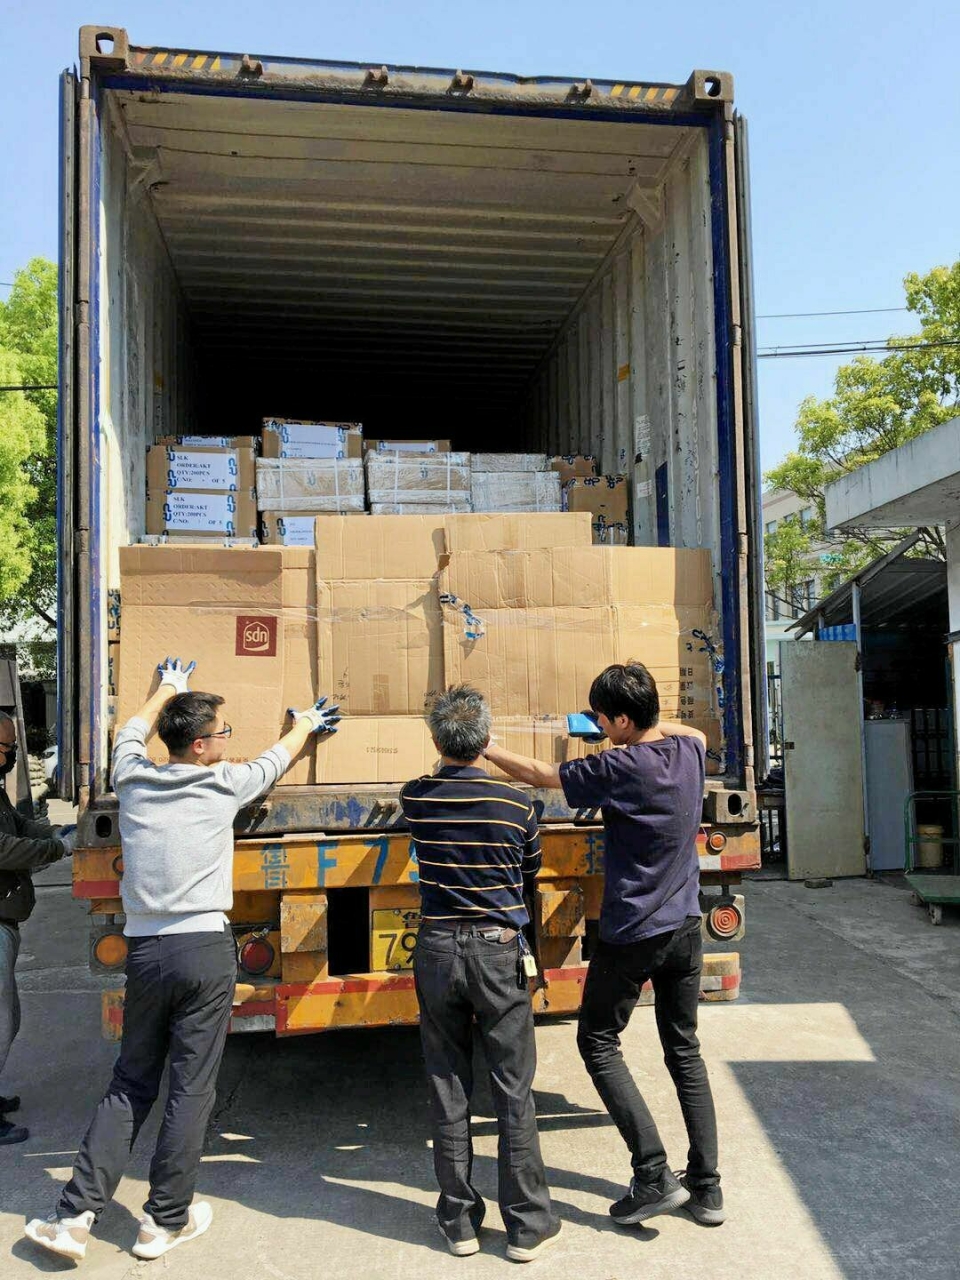 Lasten ble pakket i en container i Yuyao sør for Shanghai og brukte 20 dager på turen til Vestby.